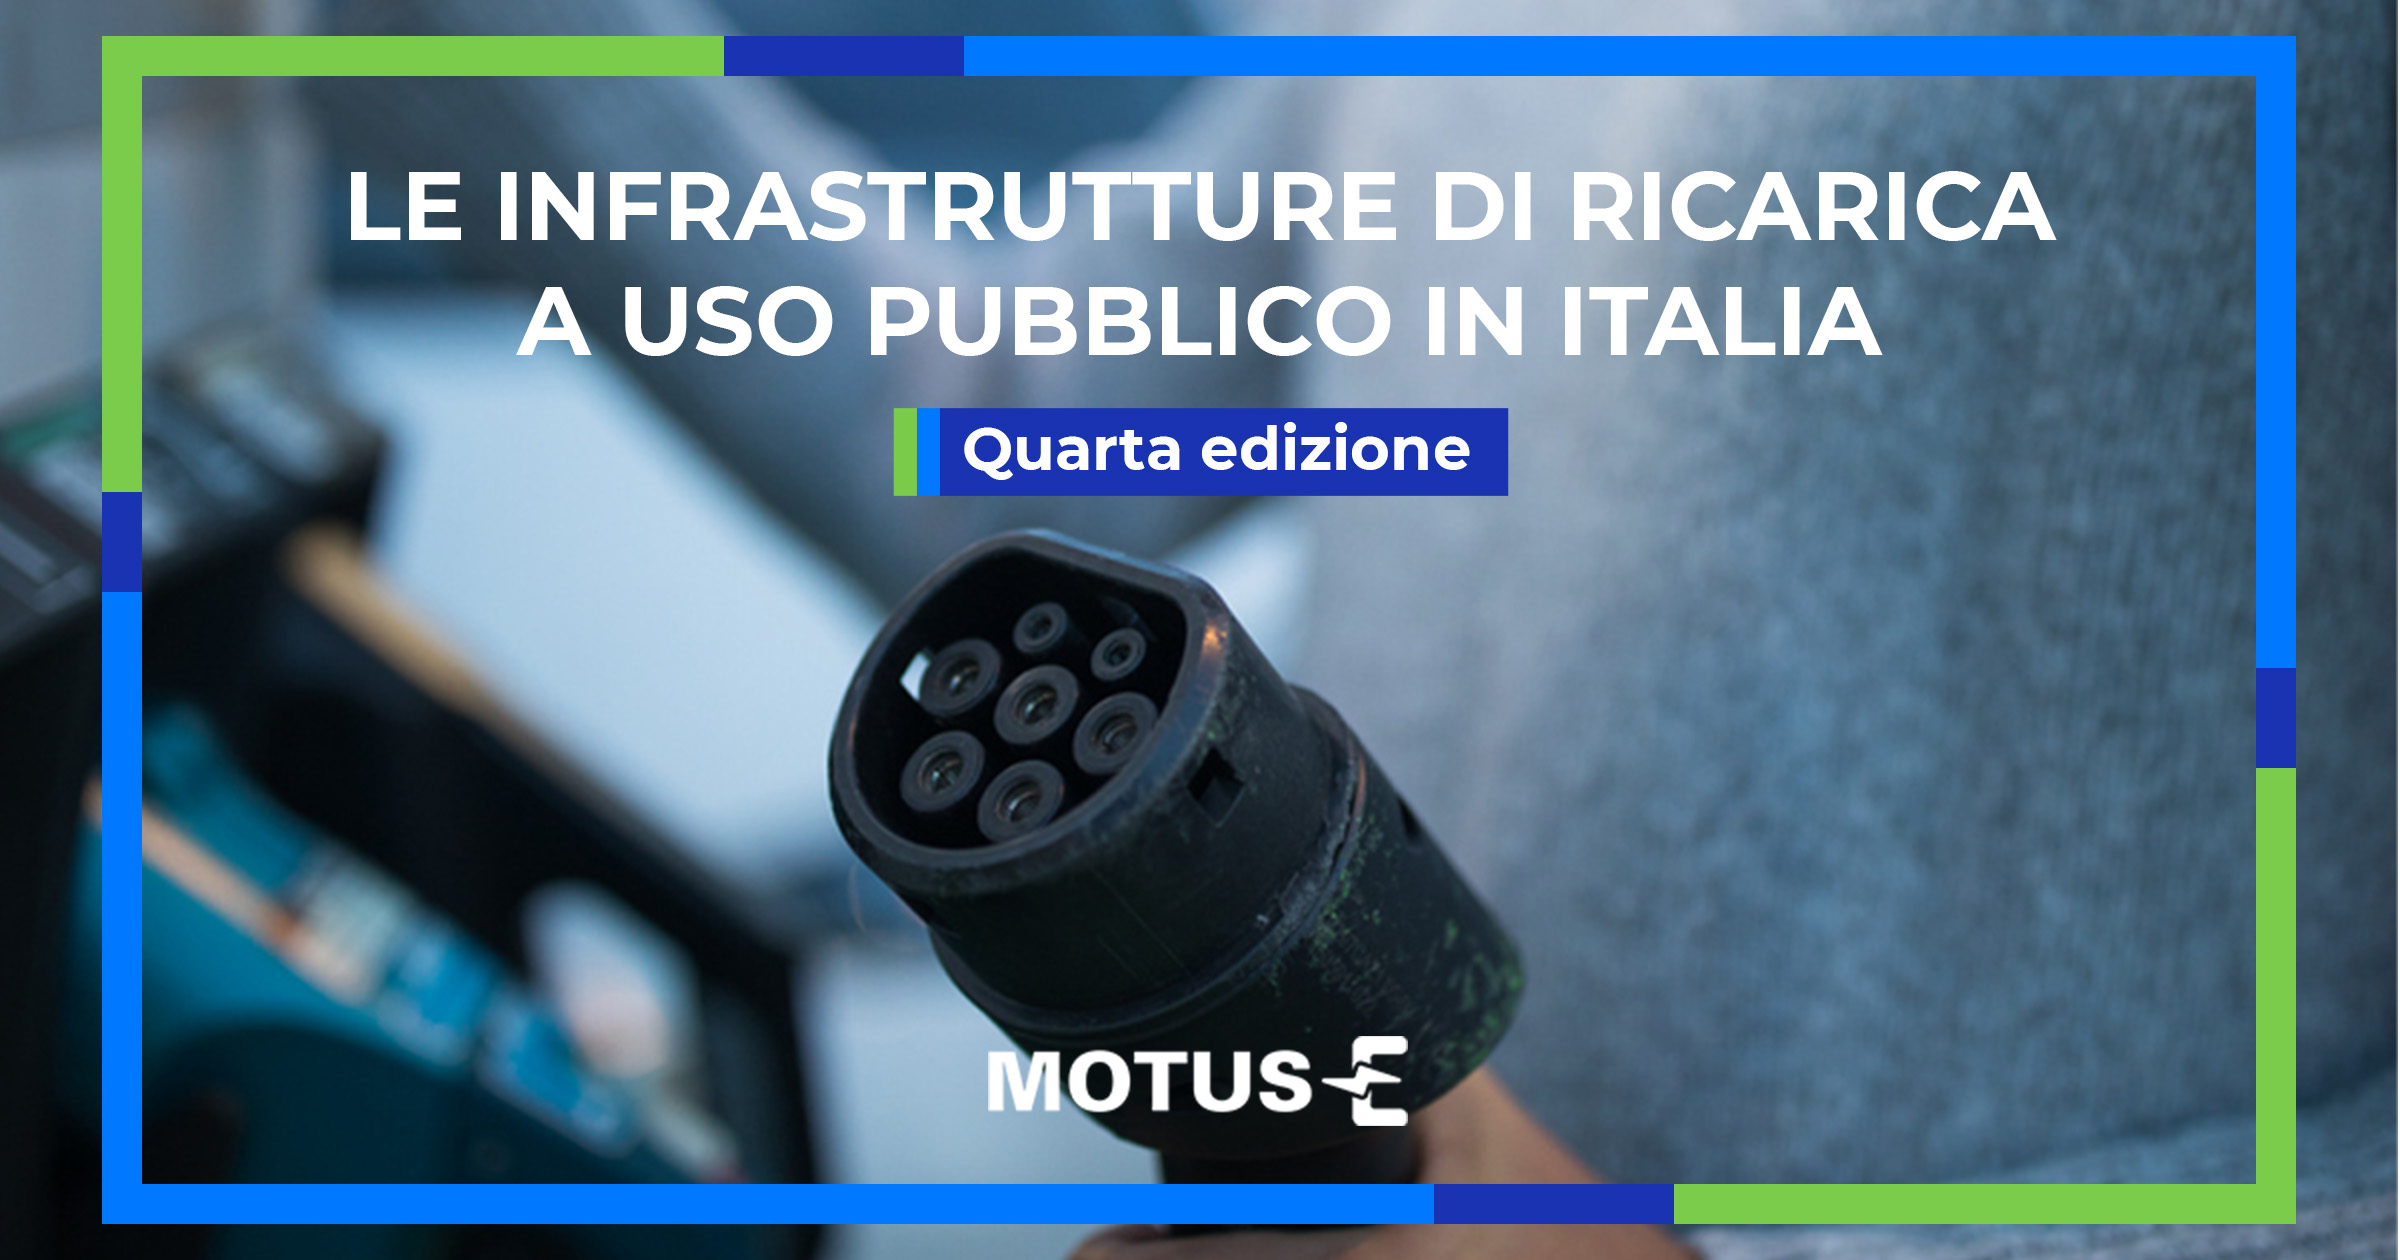 Le infrastrutture di ricarica a uso pubblico in Italia</br><h5>Quarta edizione</h5>